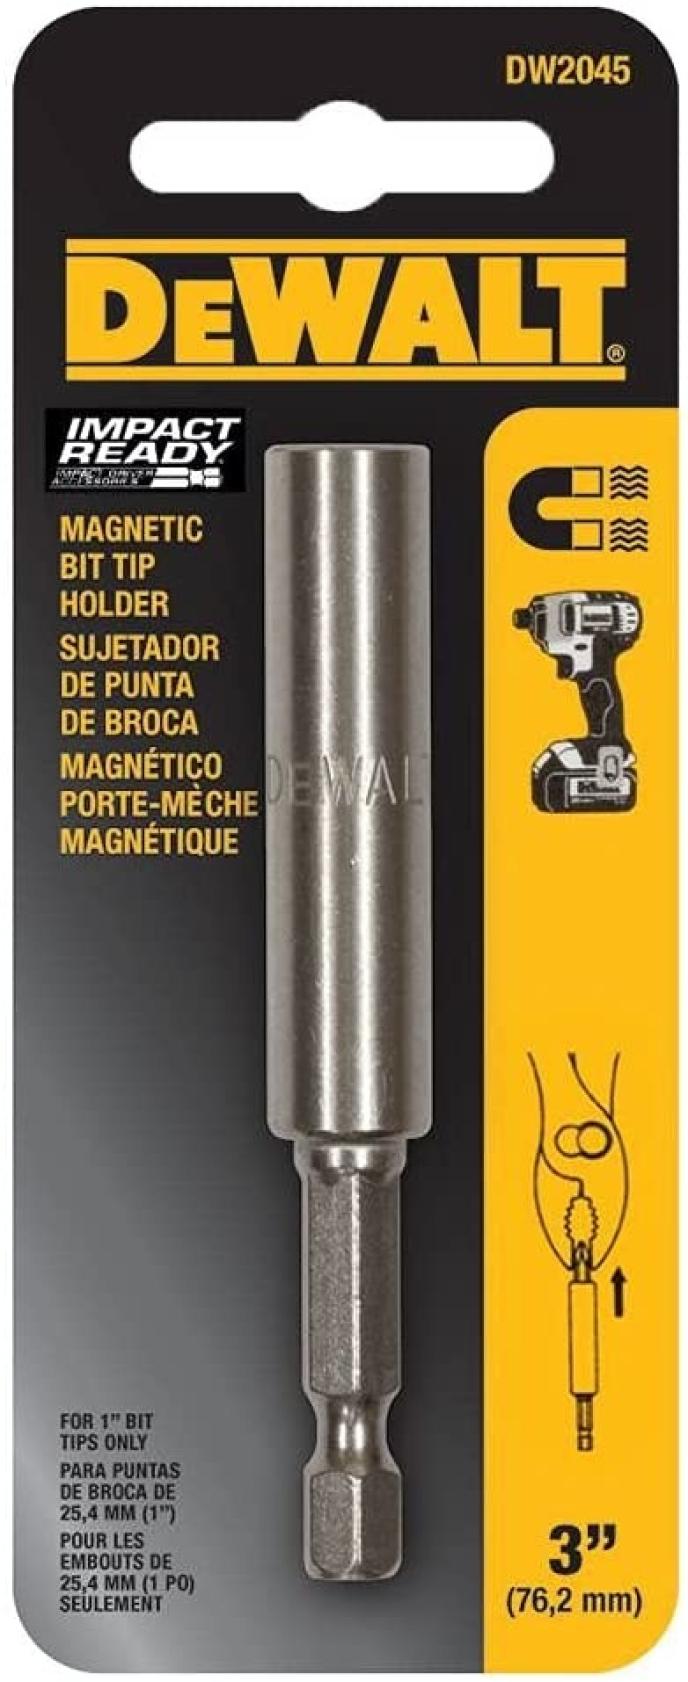 DeWalt Professional 3" Magnetic Bit Tip Holder